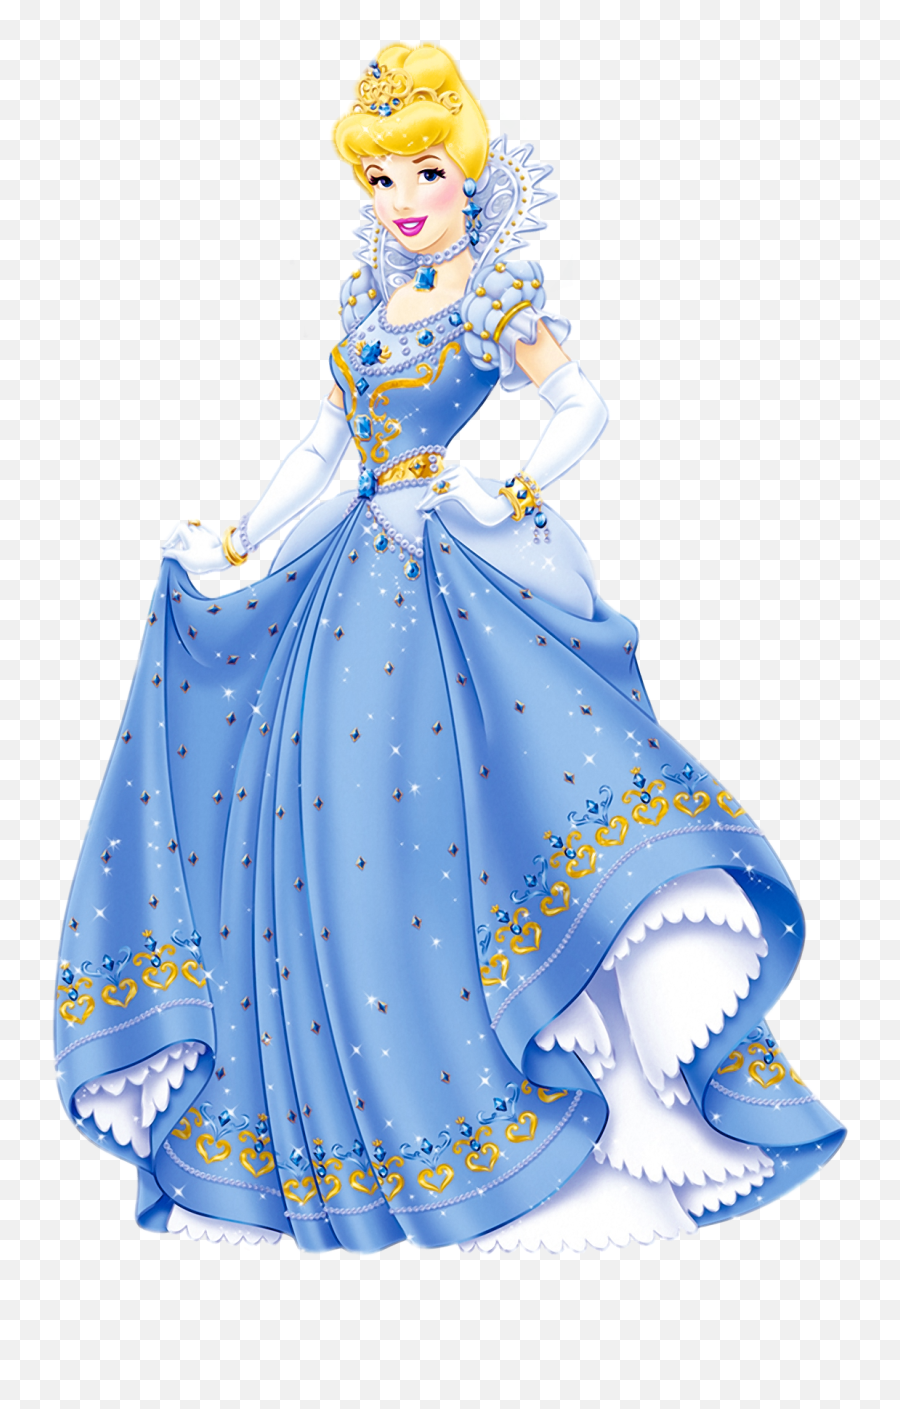 Transparent Princess Png Clipart - Snow White Cinderella Disney Princess,Cinderella Transparent